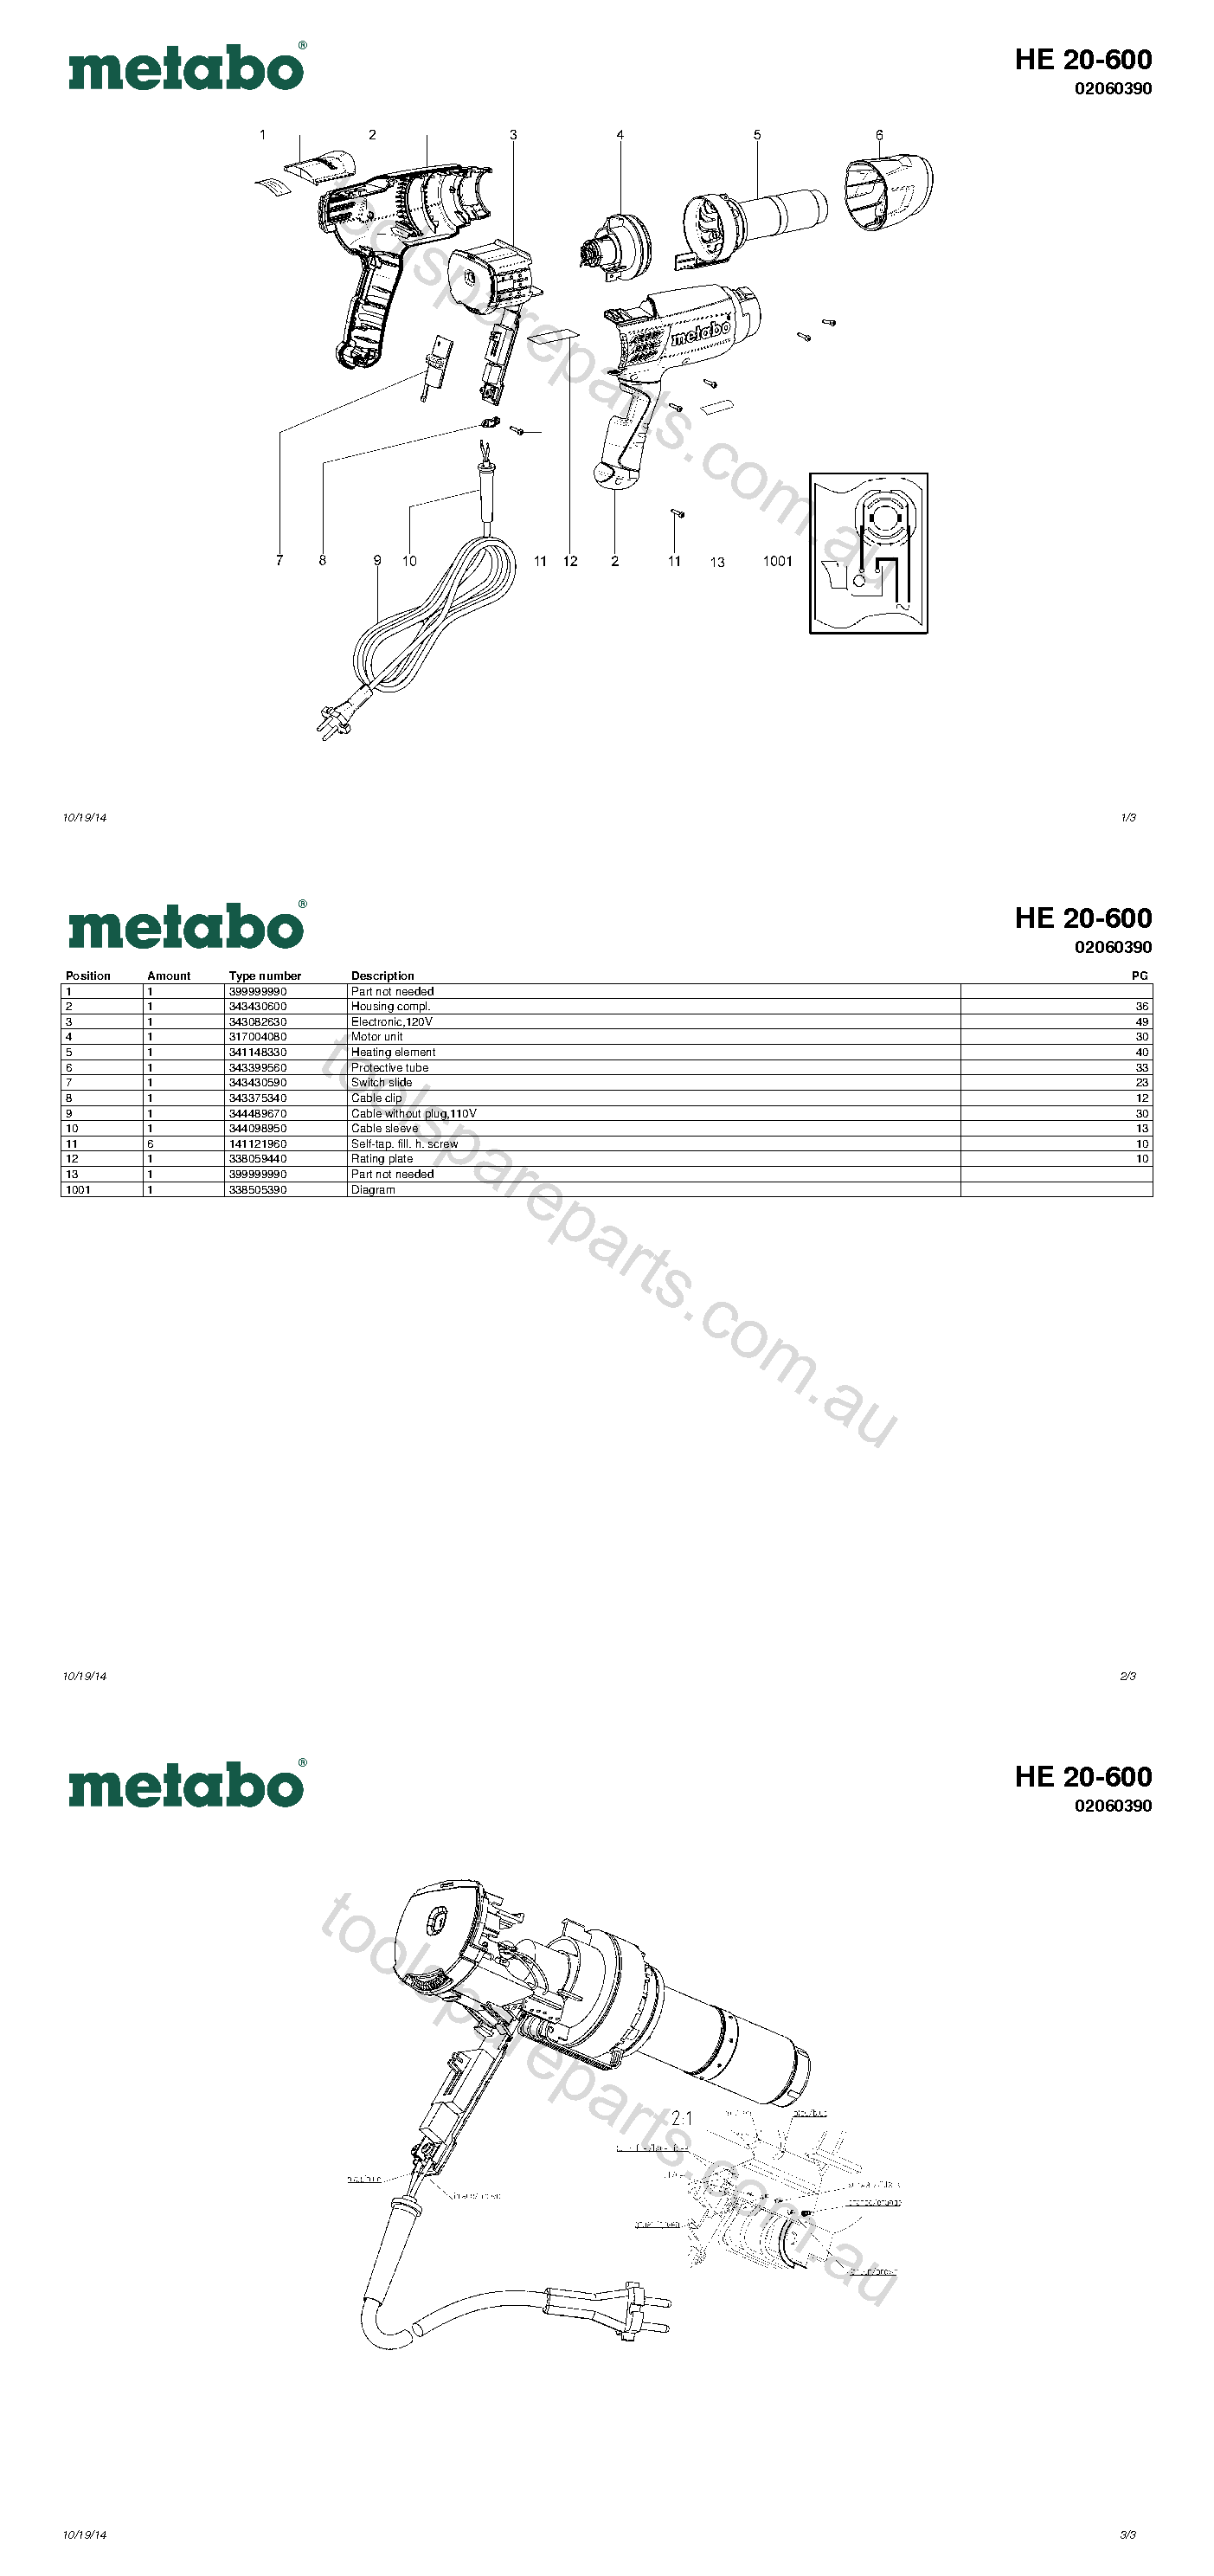 Metabo HE 20-600 02060390  Diagram 1